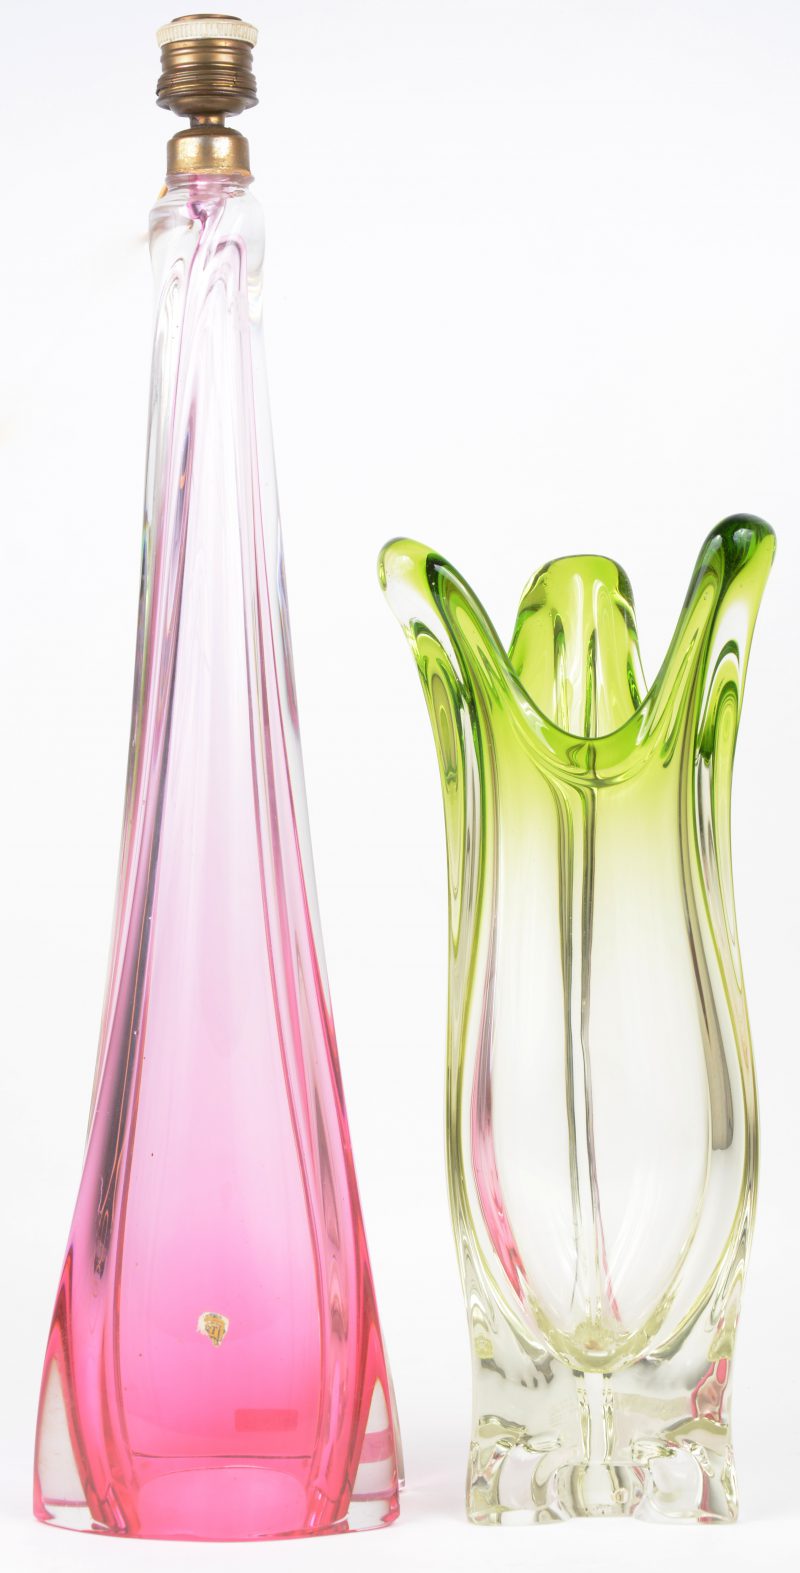 Een vaas en een lampvoet in resp groen en roze kristal.